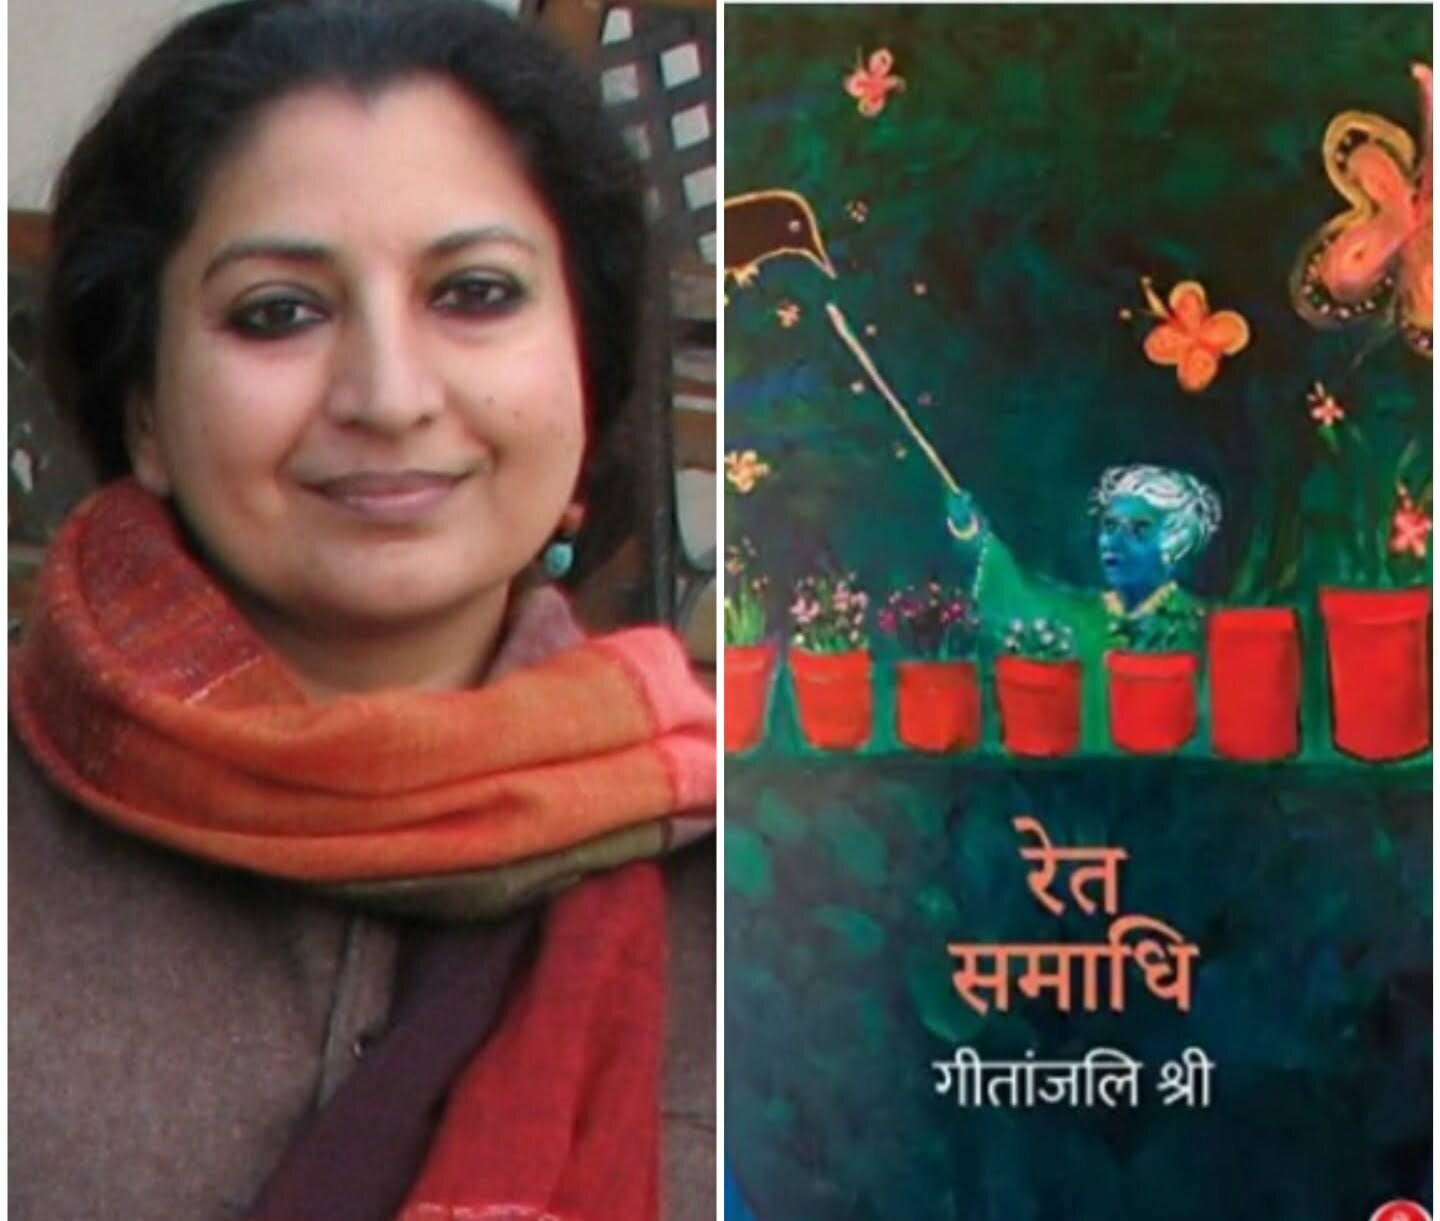 GRAND ACHIEVEMENT : दुनिया की 13 पुस्तकों में शामिल हुआ गीतांजलि श्री का उपन्यास ‘रेत समाधि’, यूपी के मैनपुरी की हैं लेखिका